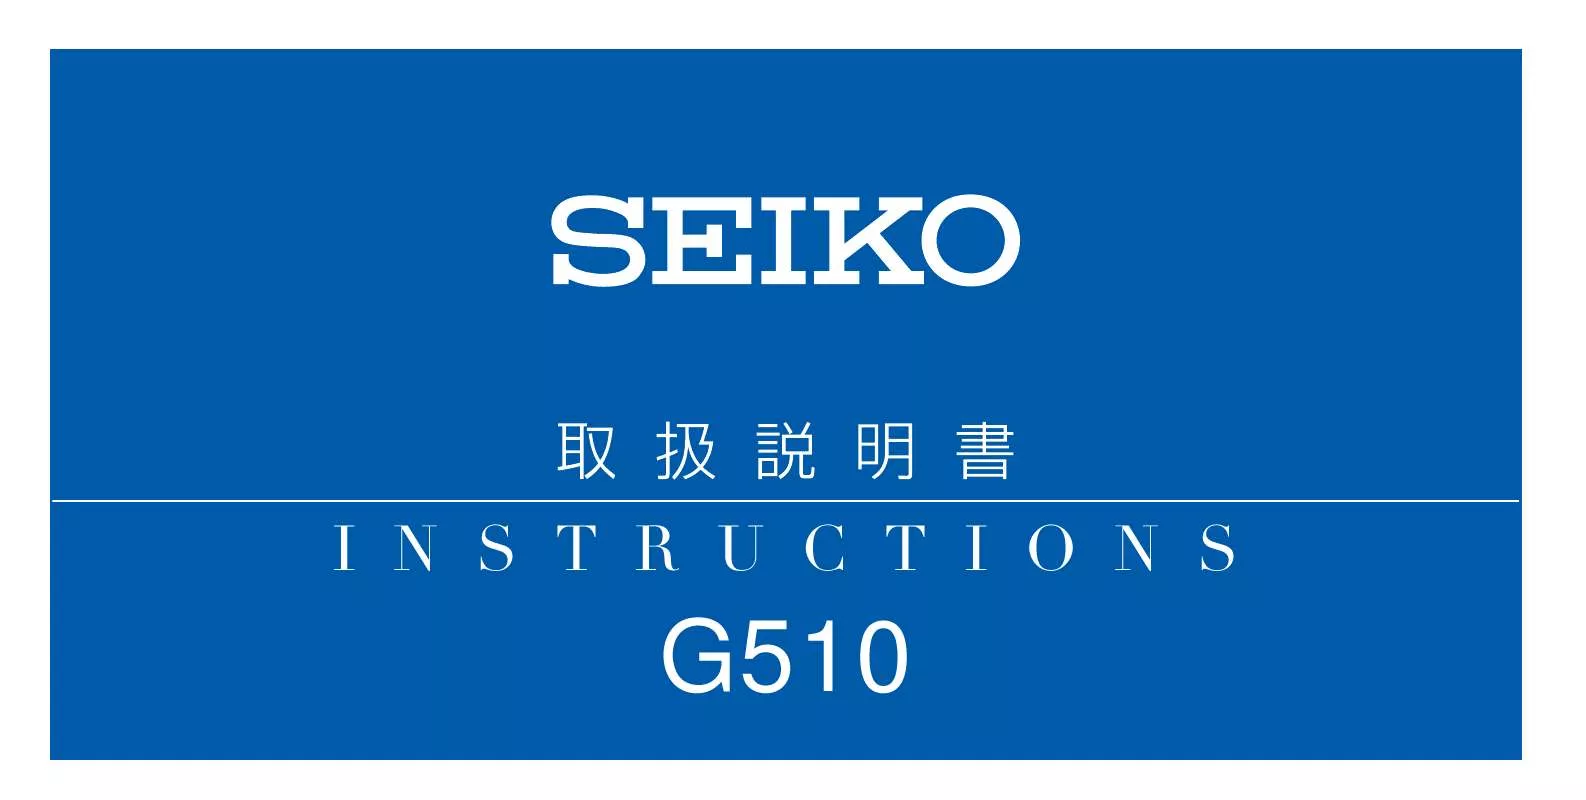 Mode d'emploi SEIKO G510